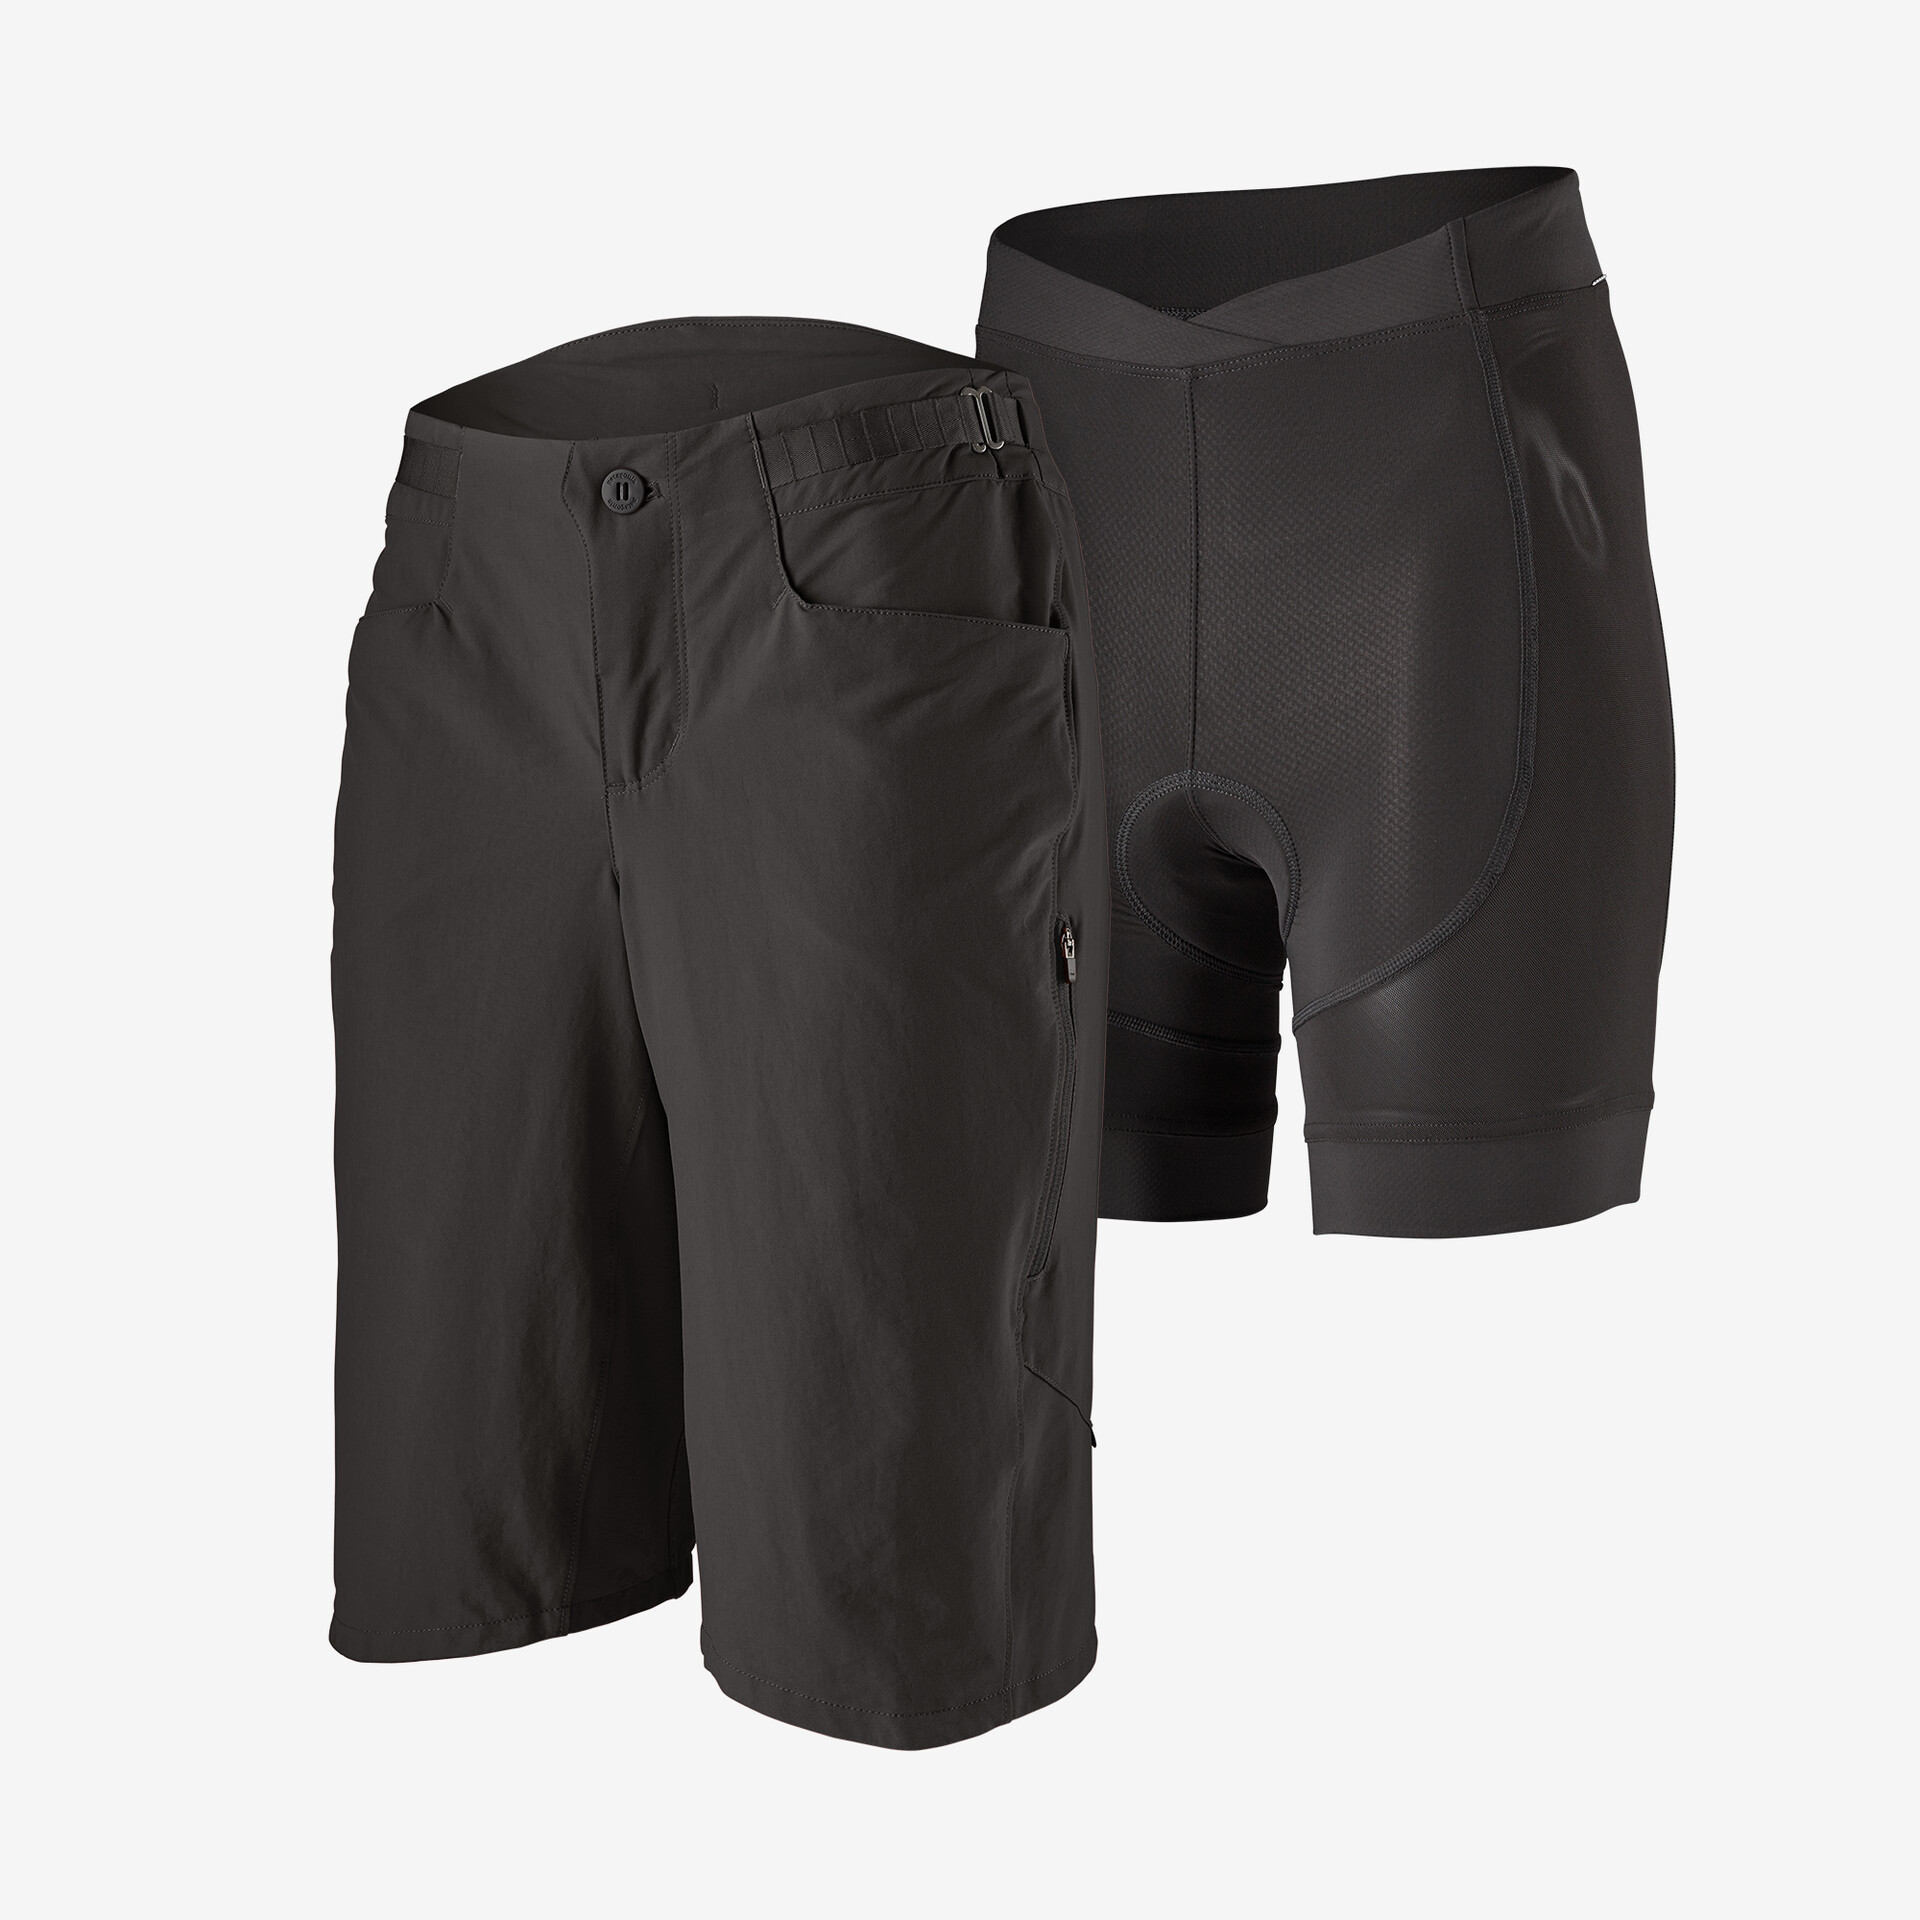 Женские велосипедные шорты для грязи, 12 дюймов Patagonia, черный шорты велосипедные мужские светоотражающие дышащие свободные штаны для горных велосипедов короткие брюки для мотокросса